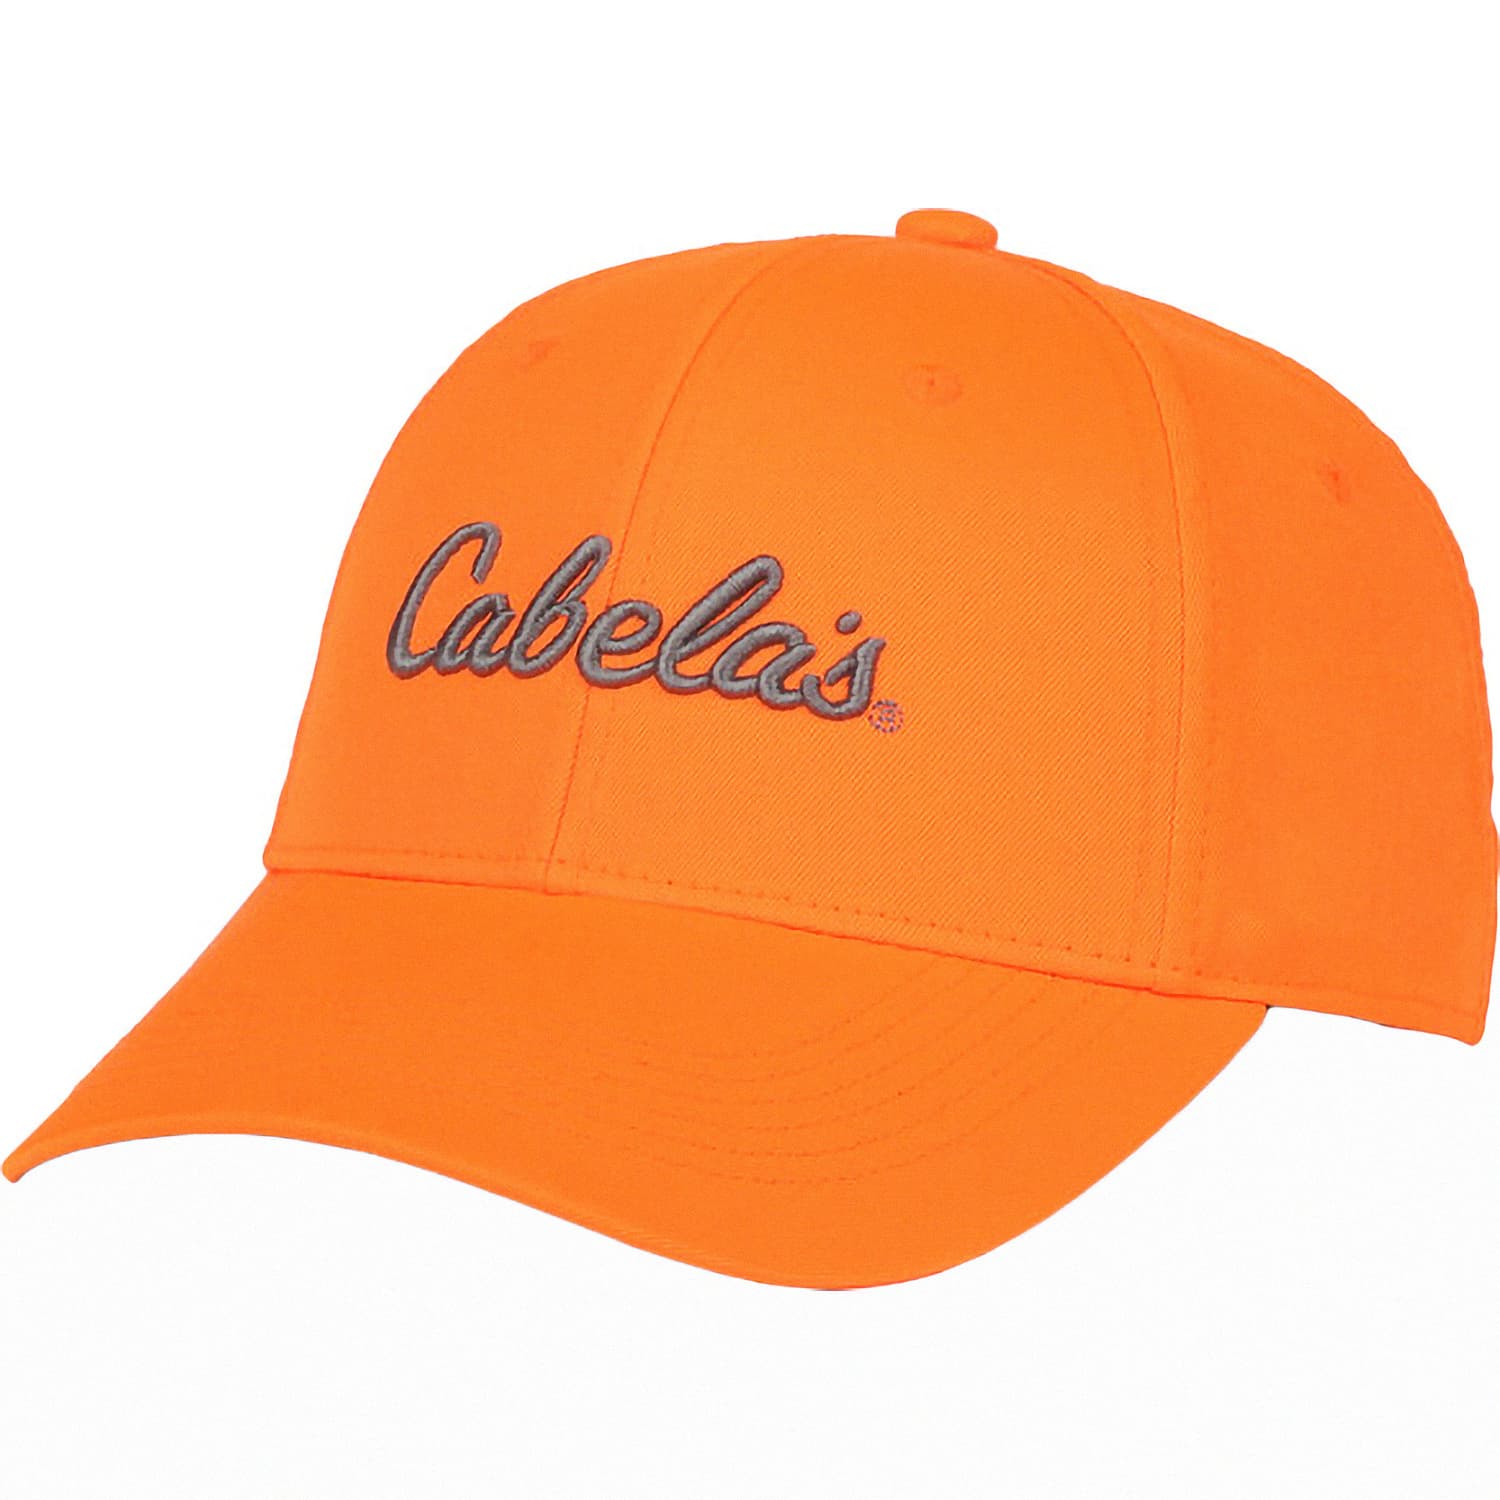 Caps & Hats  Cabela's Canada